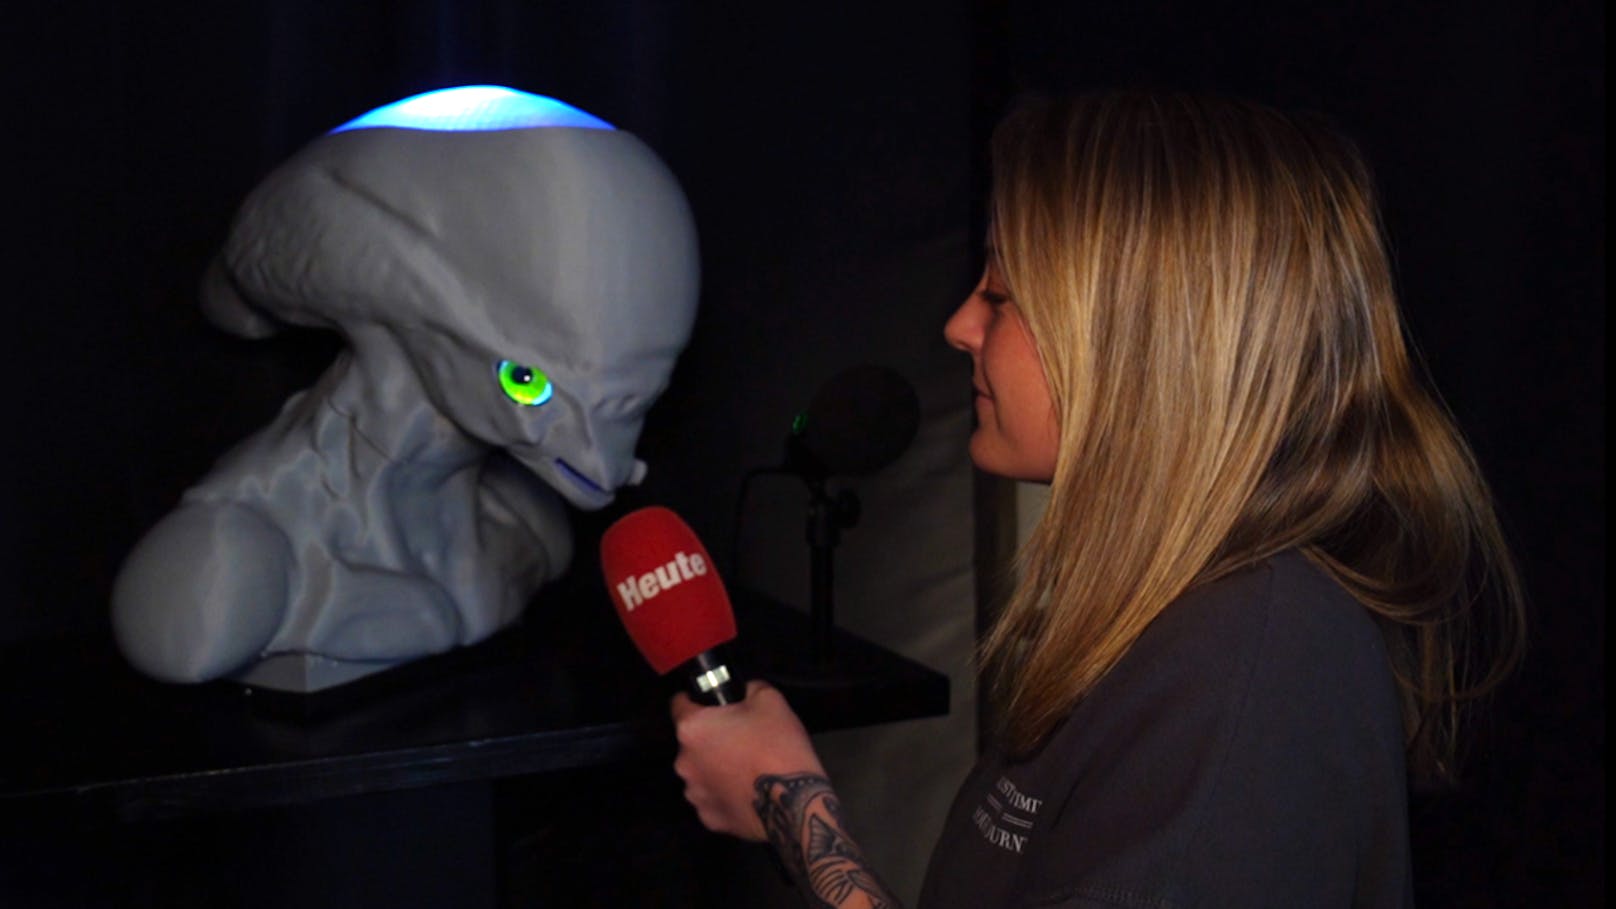 "Heute" backstage: Interview mit einem Alien